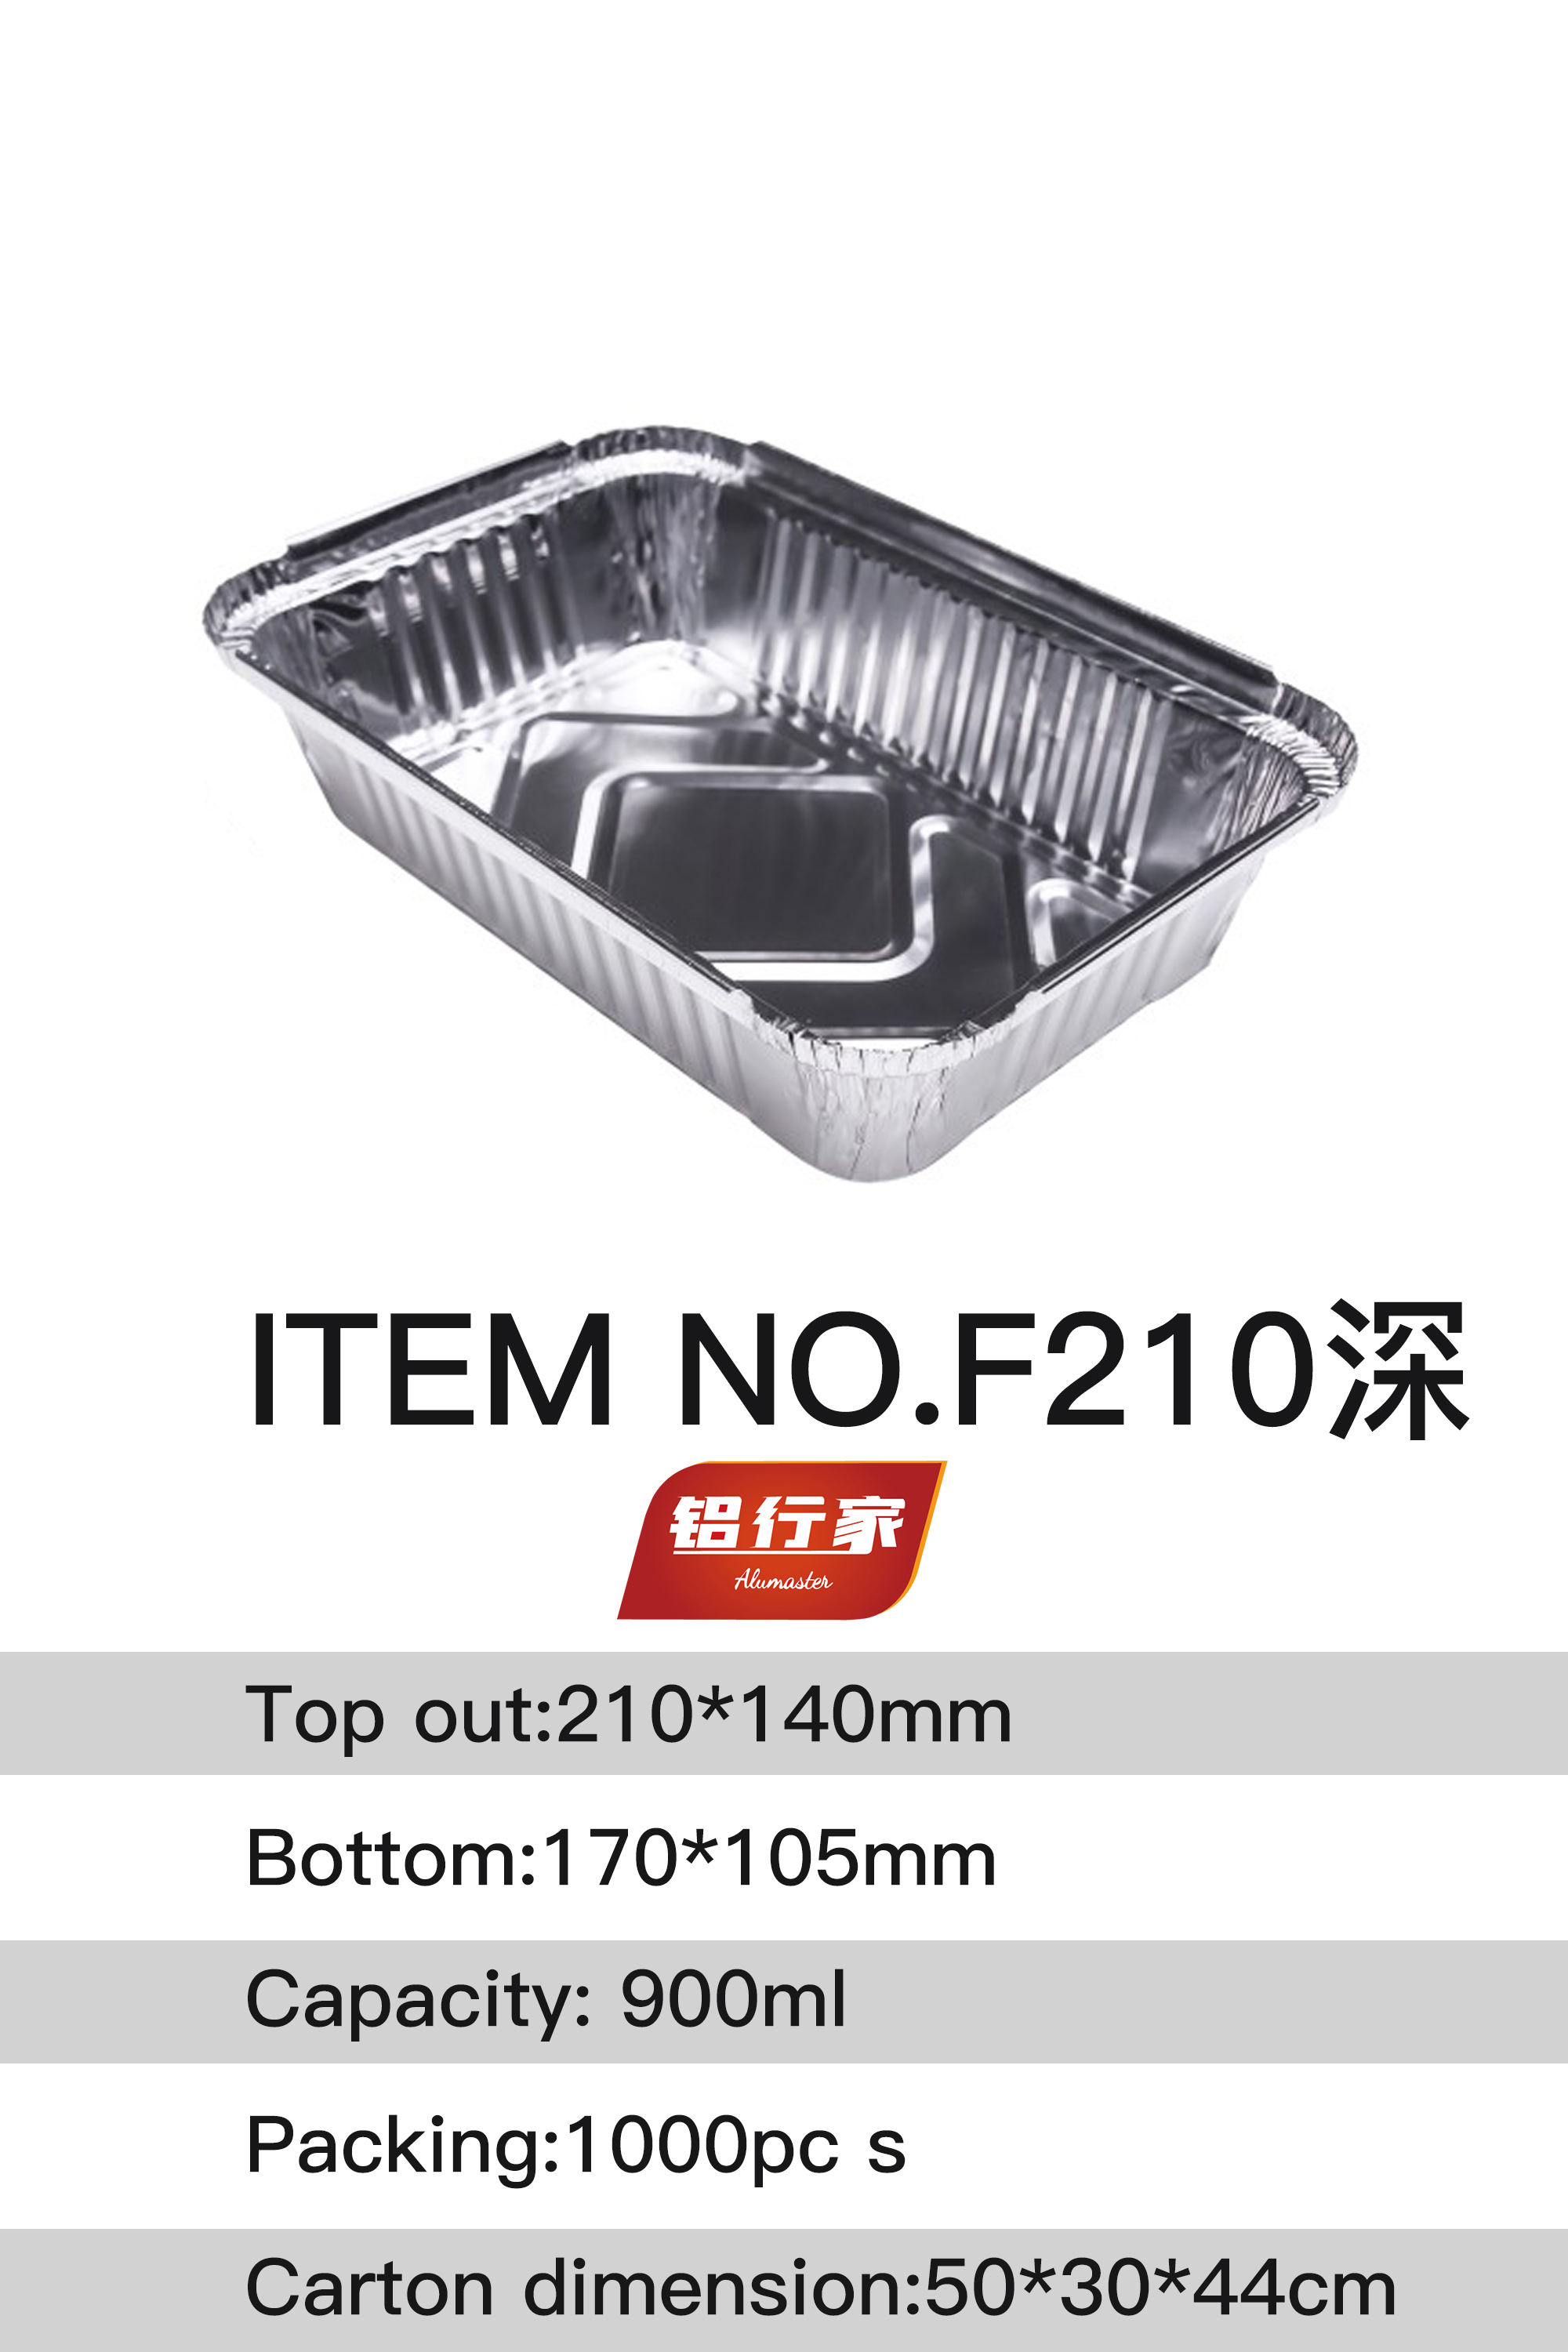 铝行家铝箔餐盒F210深/900